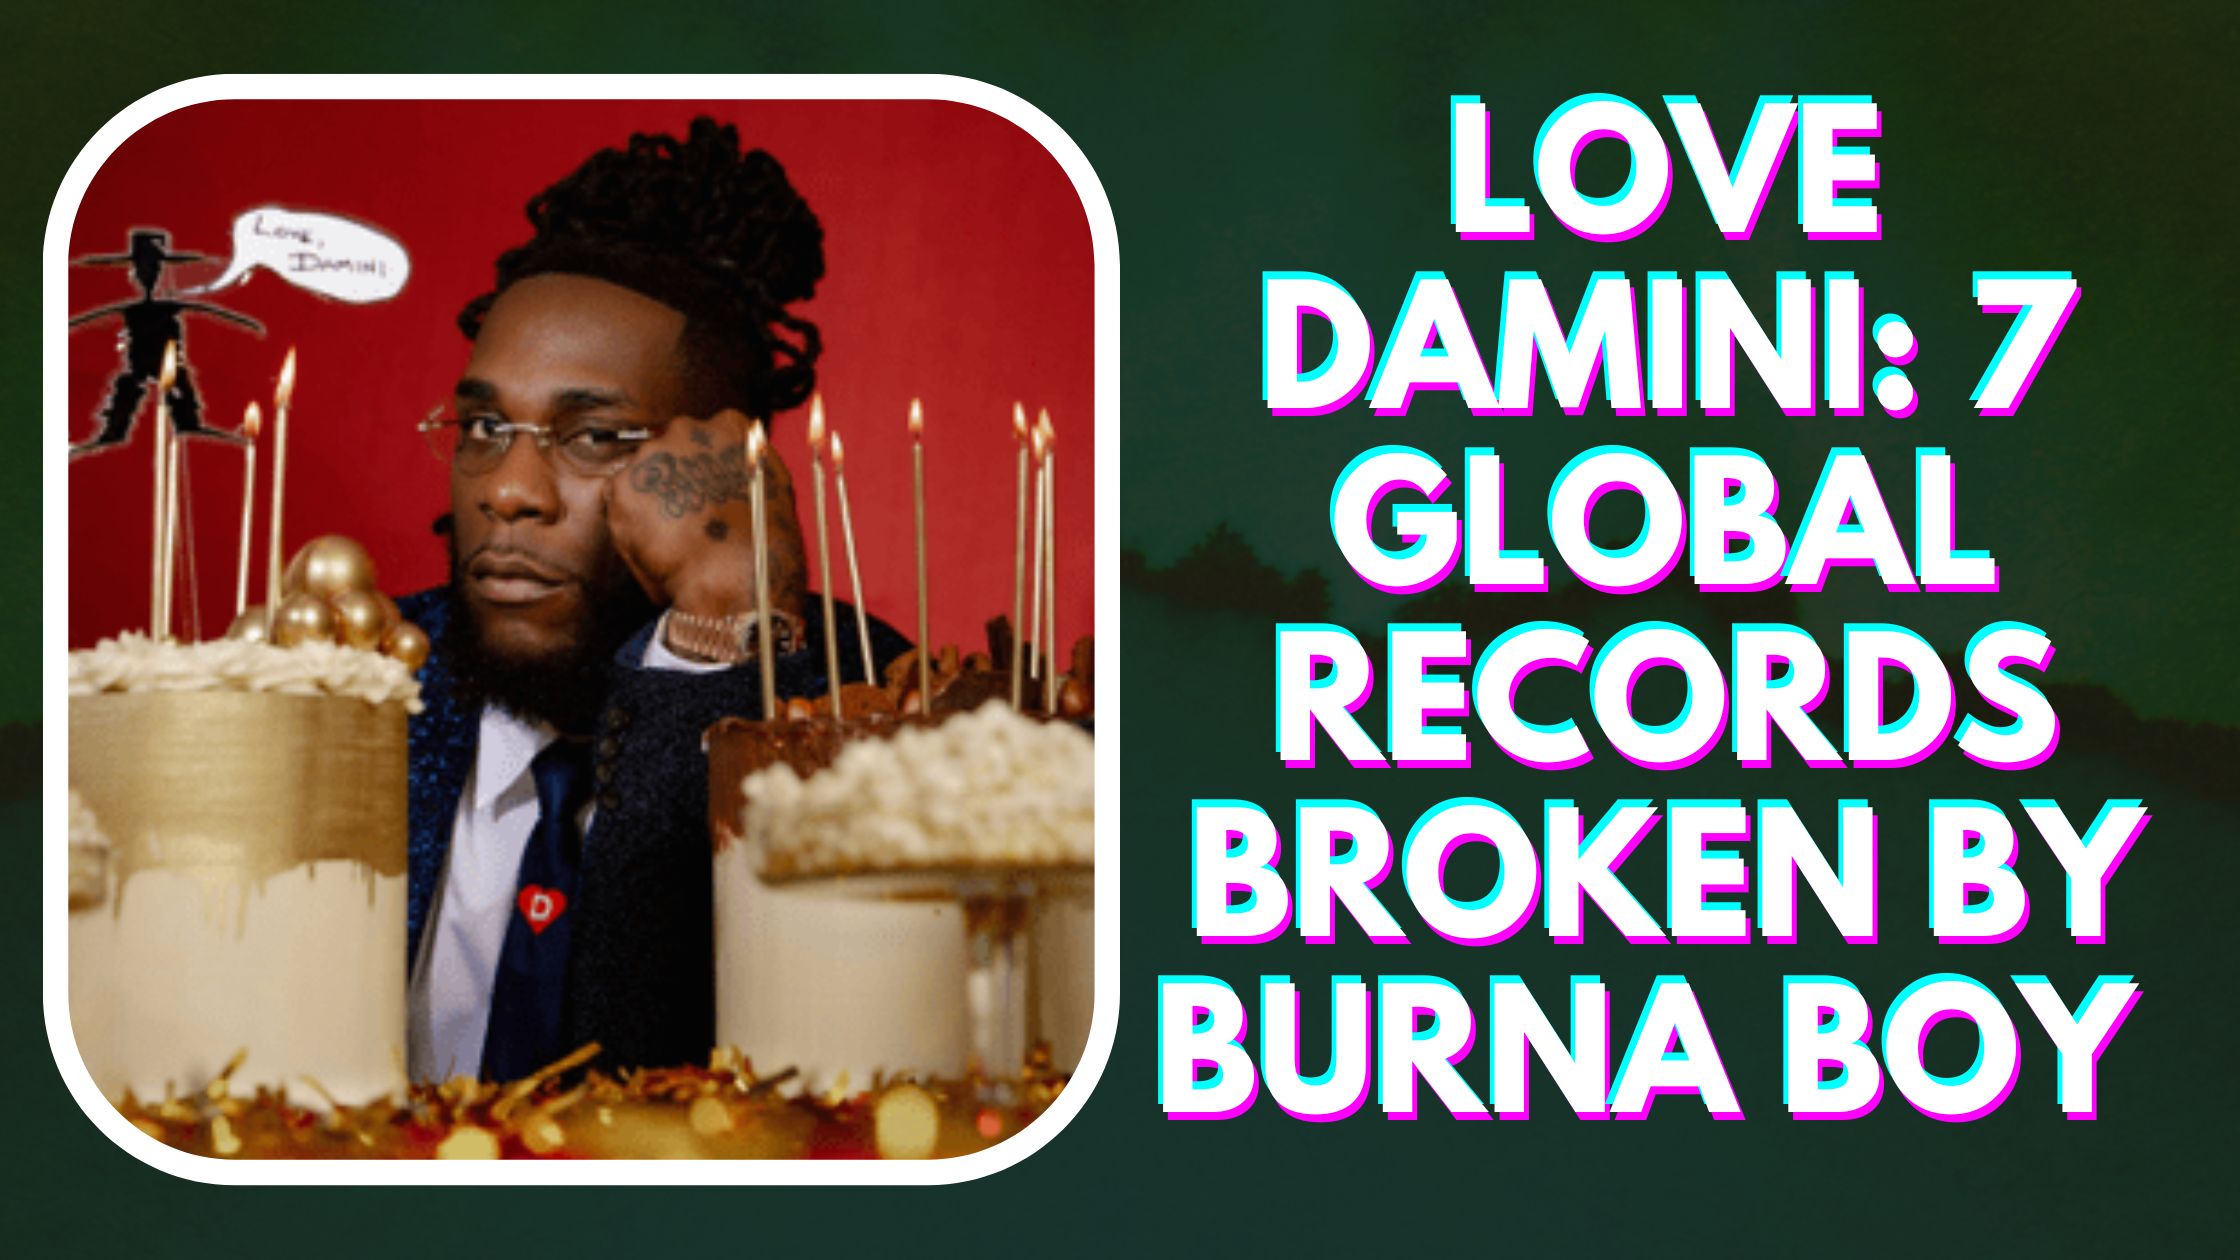 Love Damini: 7 Global Records Broken by Burna Boy In 2022.